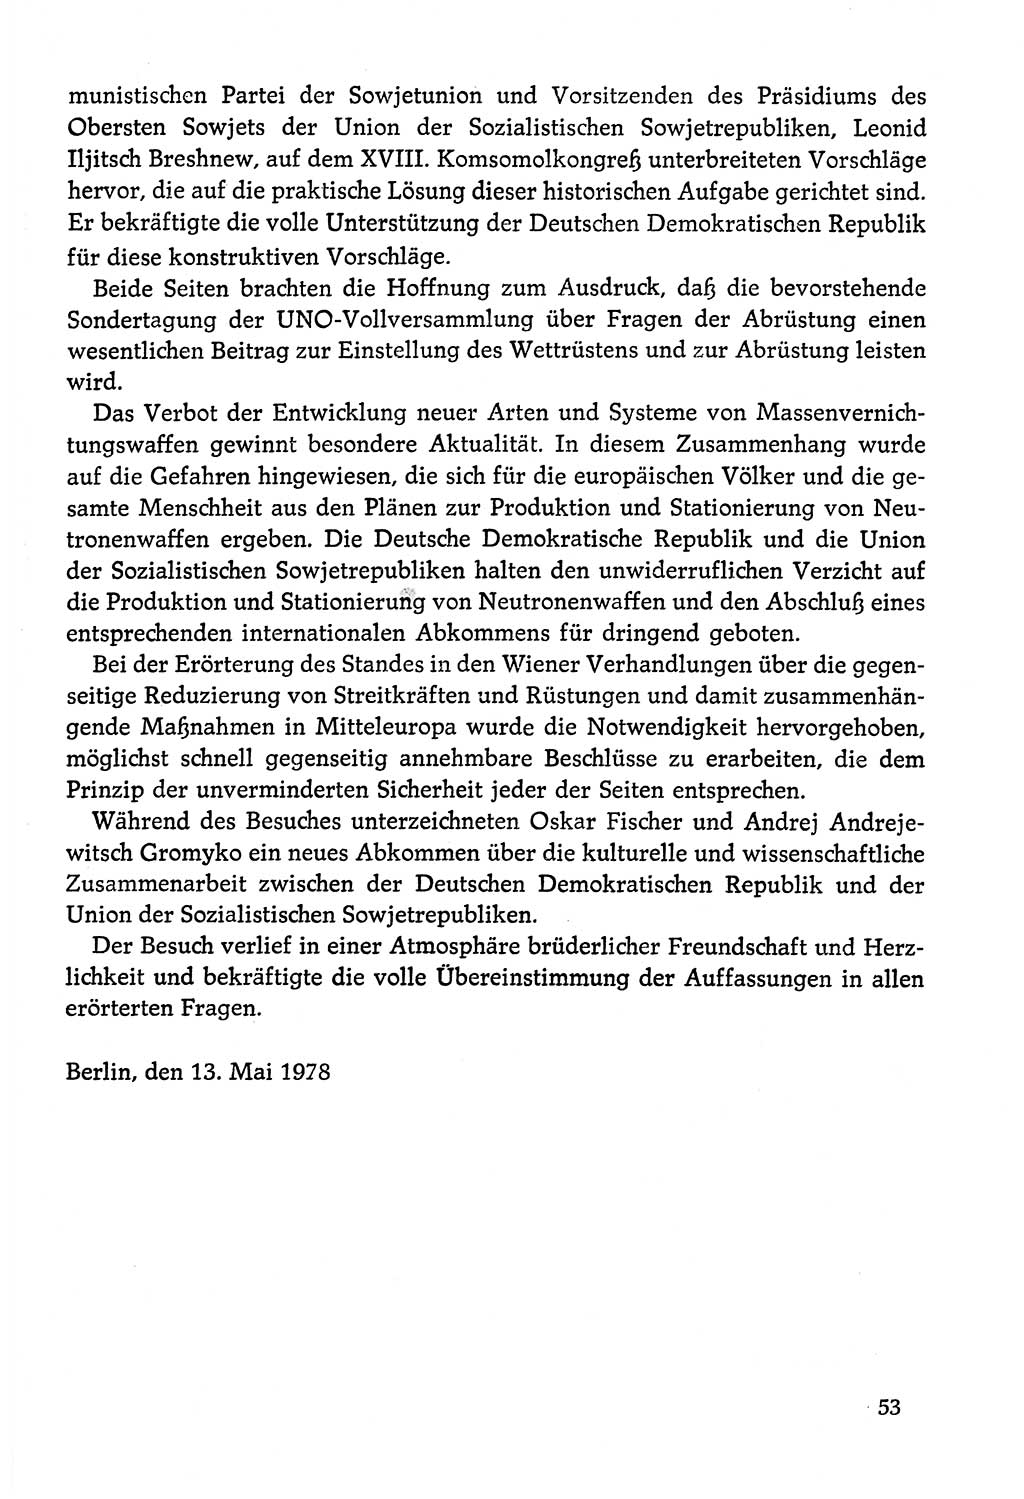 Dokumente der Sozialistischen Einheitspartei Deutschlands (SED) [Deutsche Demokratische Republik (DDR)] 1978-1979, Seite 53 (Dok. SED DDR 1978-1979, S. 53)